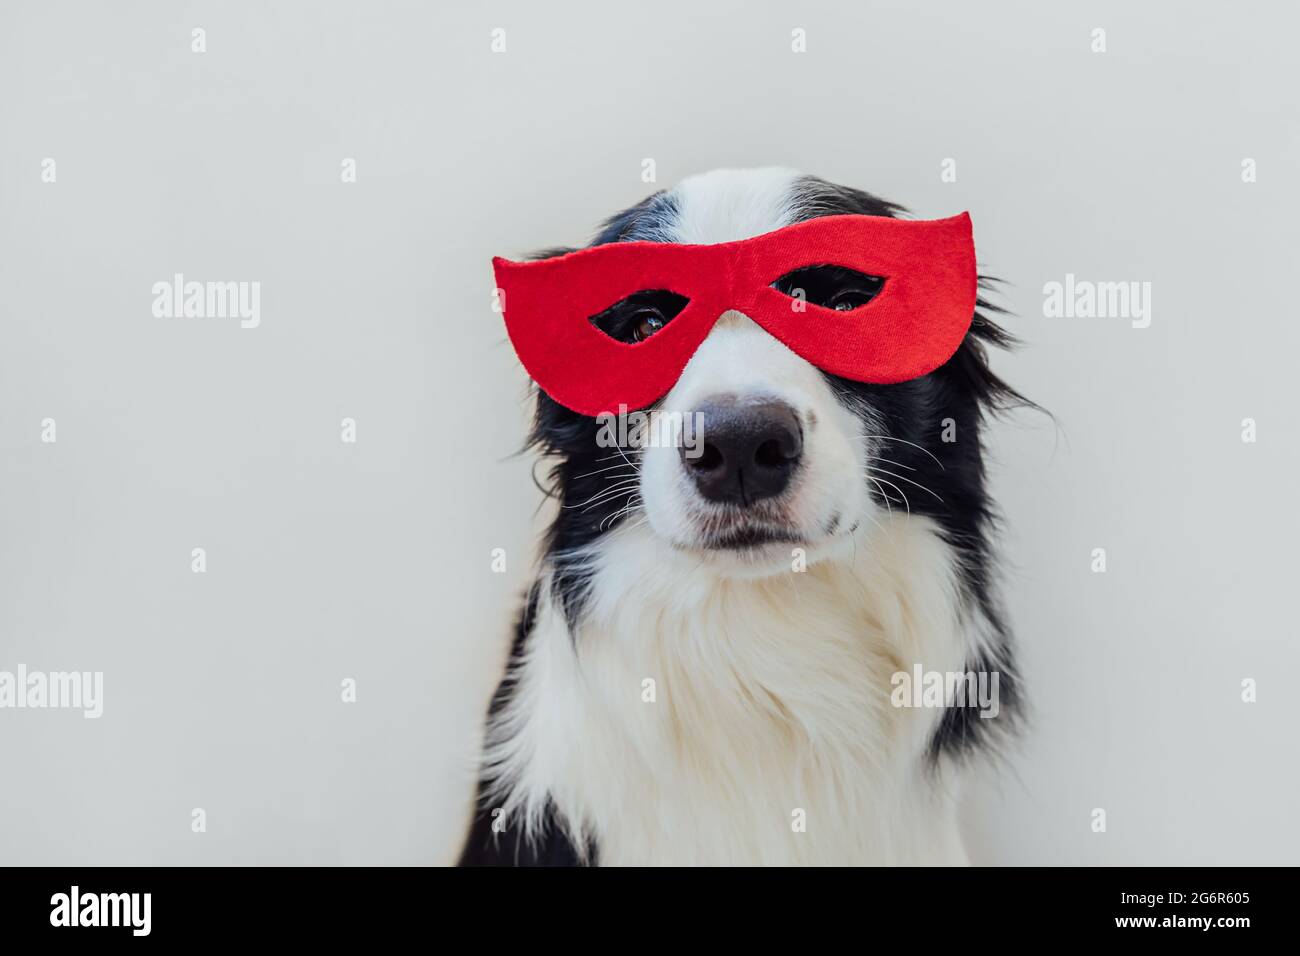 Lustige Porträt von niedlichen Hund Grenze Collie im Superhelden Kostüm isoliert auf weißem Hintergrund. Welpen tragen rote Superhelden Maske an Fasching oder halloween Stockfoto